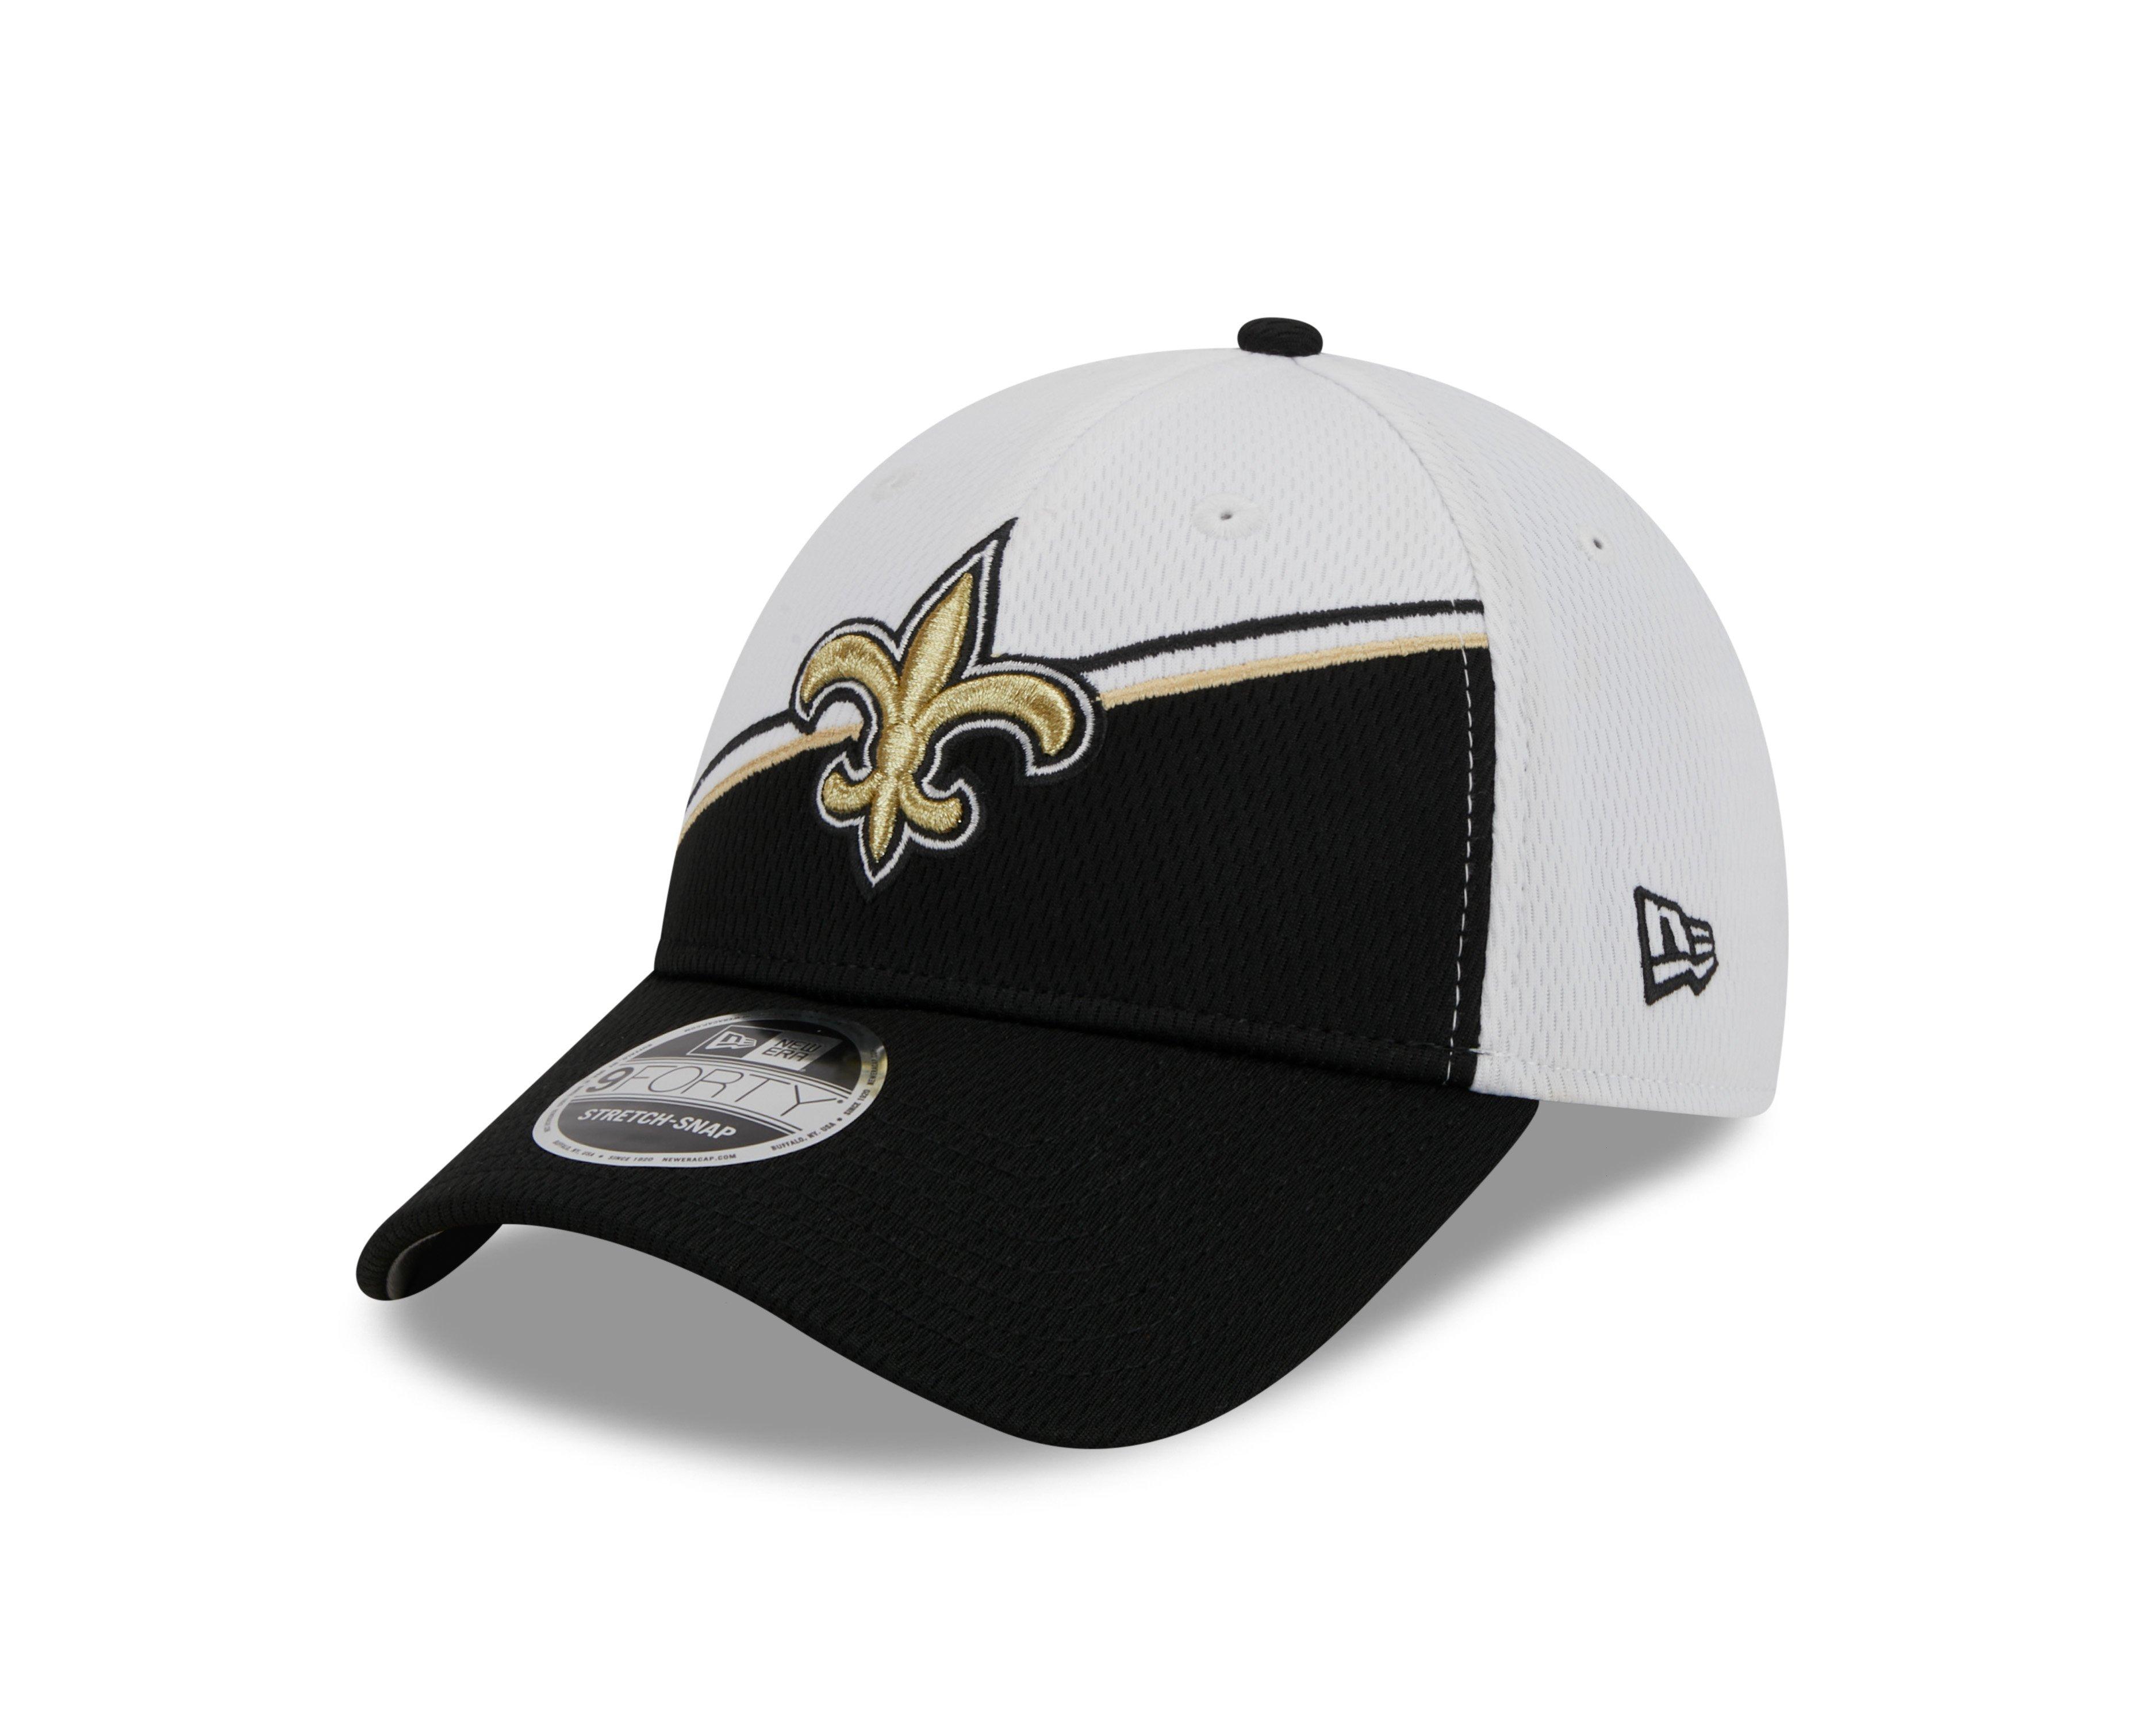 NFL New Orleans Saints New Era Pro Design Hat